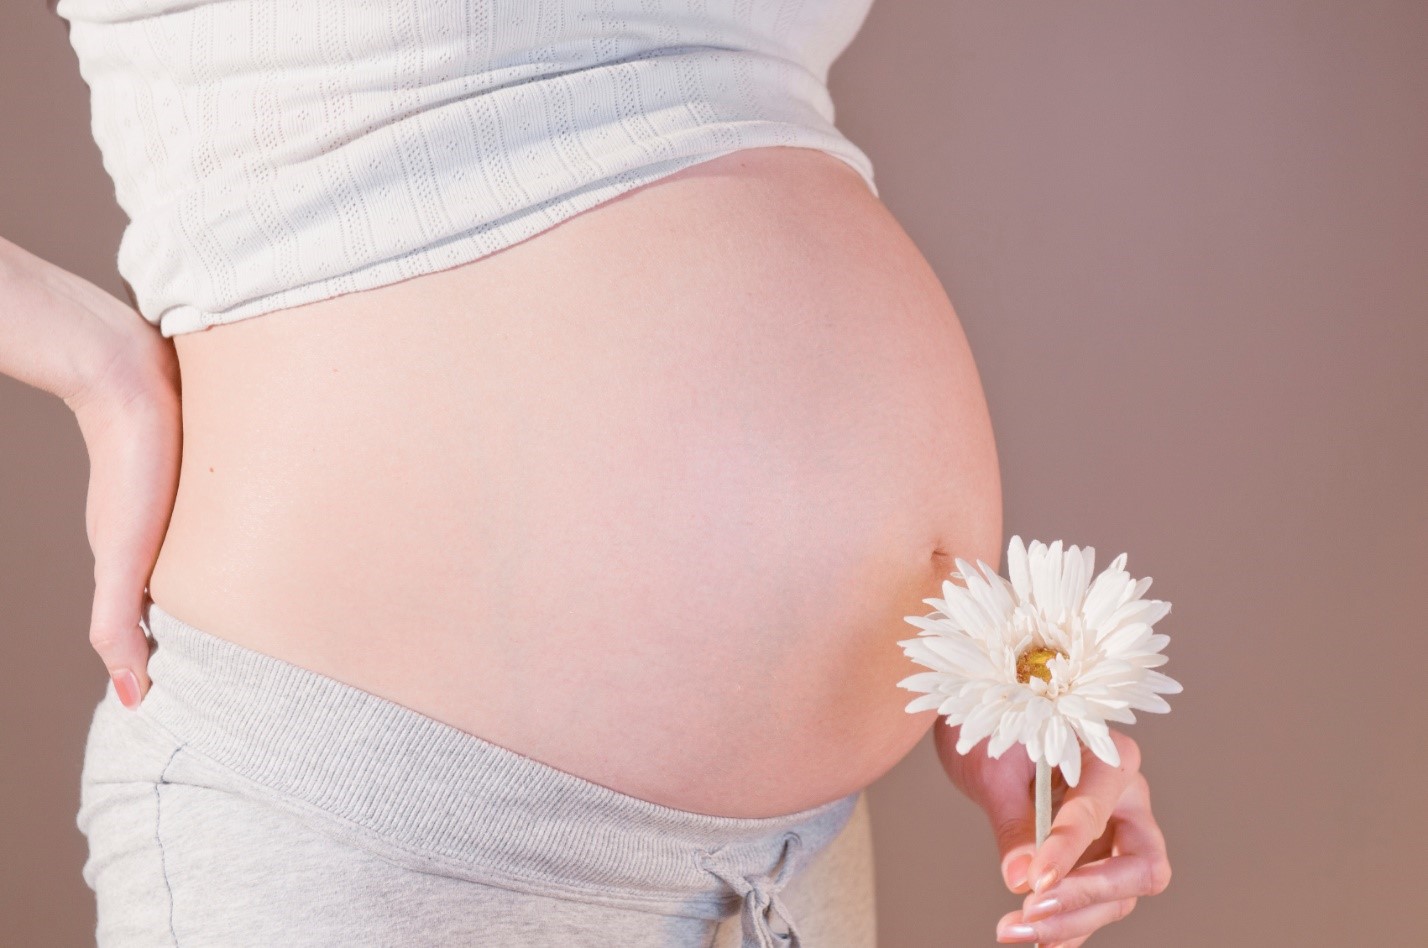 Giải pháp đẩy lùi triệt để tình trạng rạn da và chán ăn ở mẹ bầu trong thời kì mang thai 5